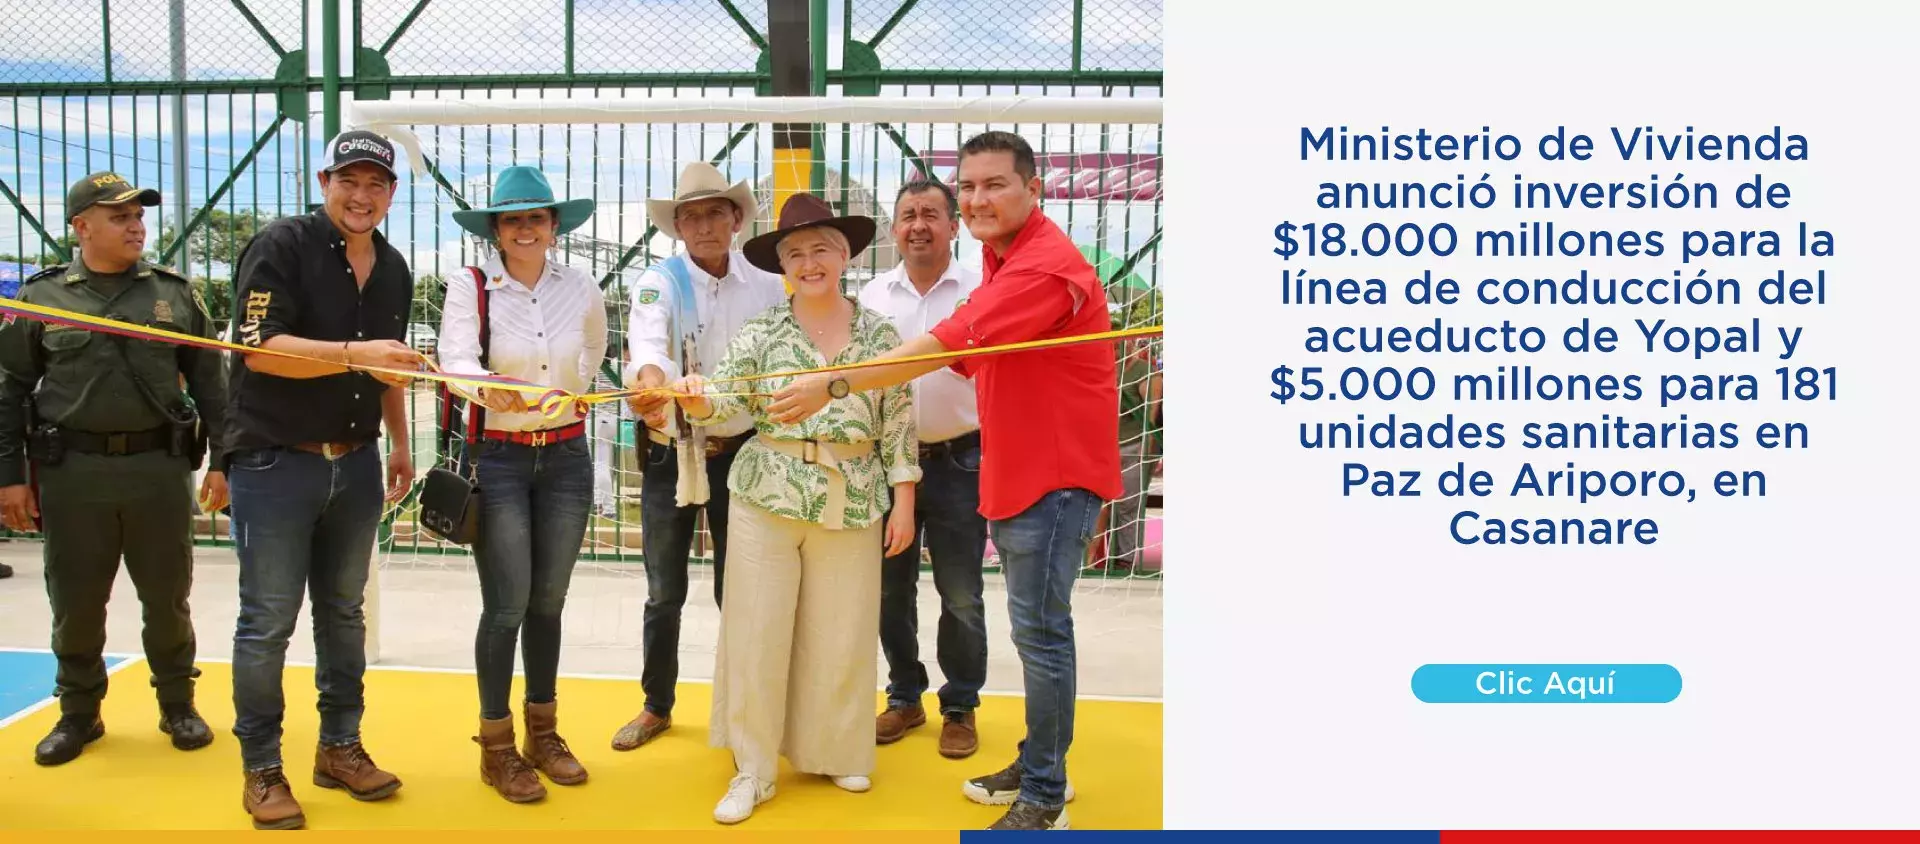 Ministerio de Vivienda anunció inversión de $18.000 millones para la línea de conducción del acueducto de Yopal y $5.000 millones para 181 unidades sanitarias en Paz de Ariporo, en Casanare